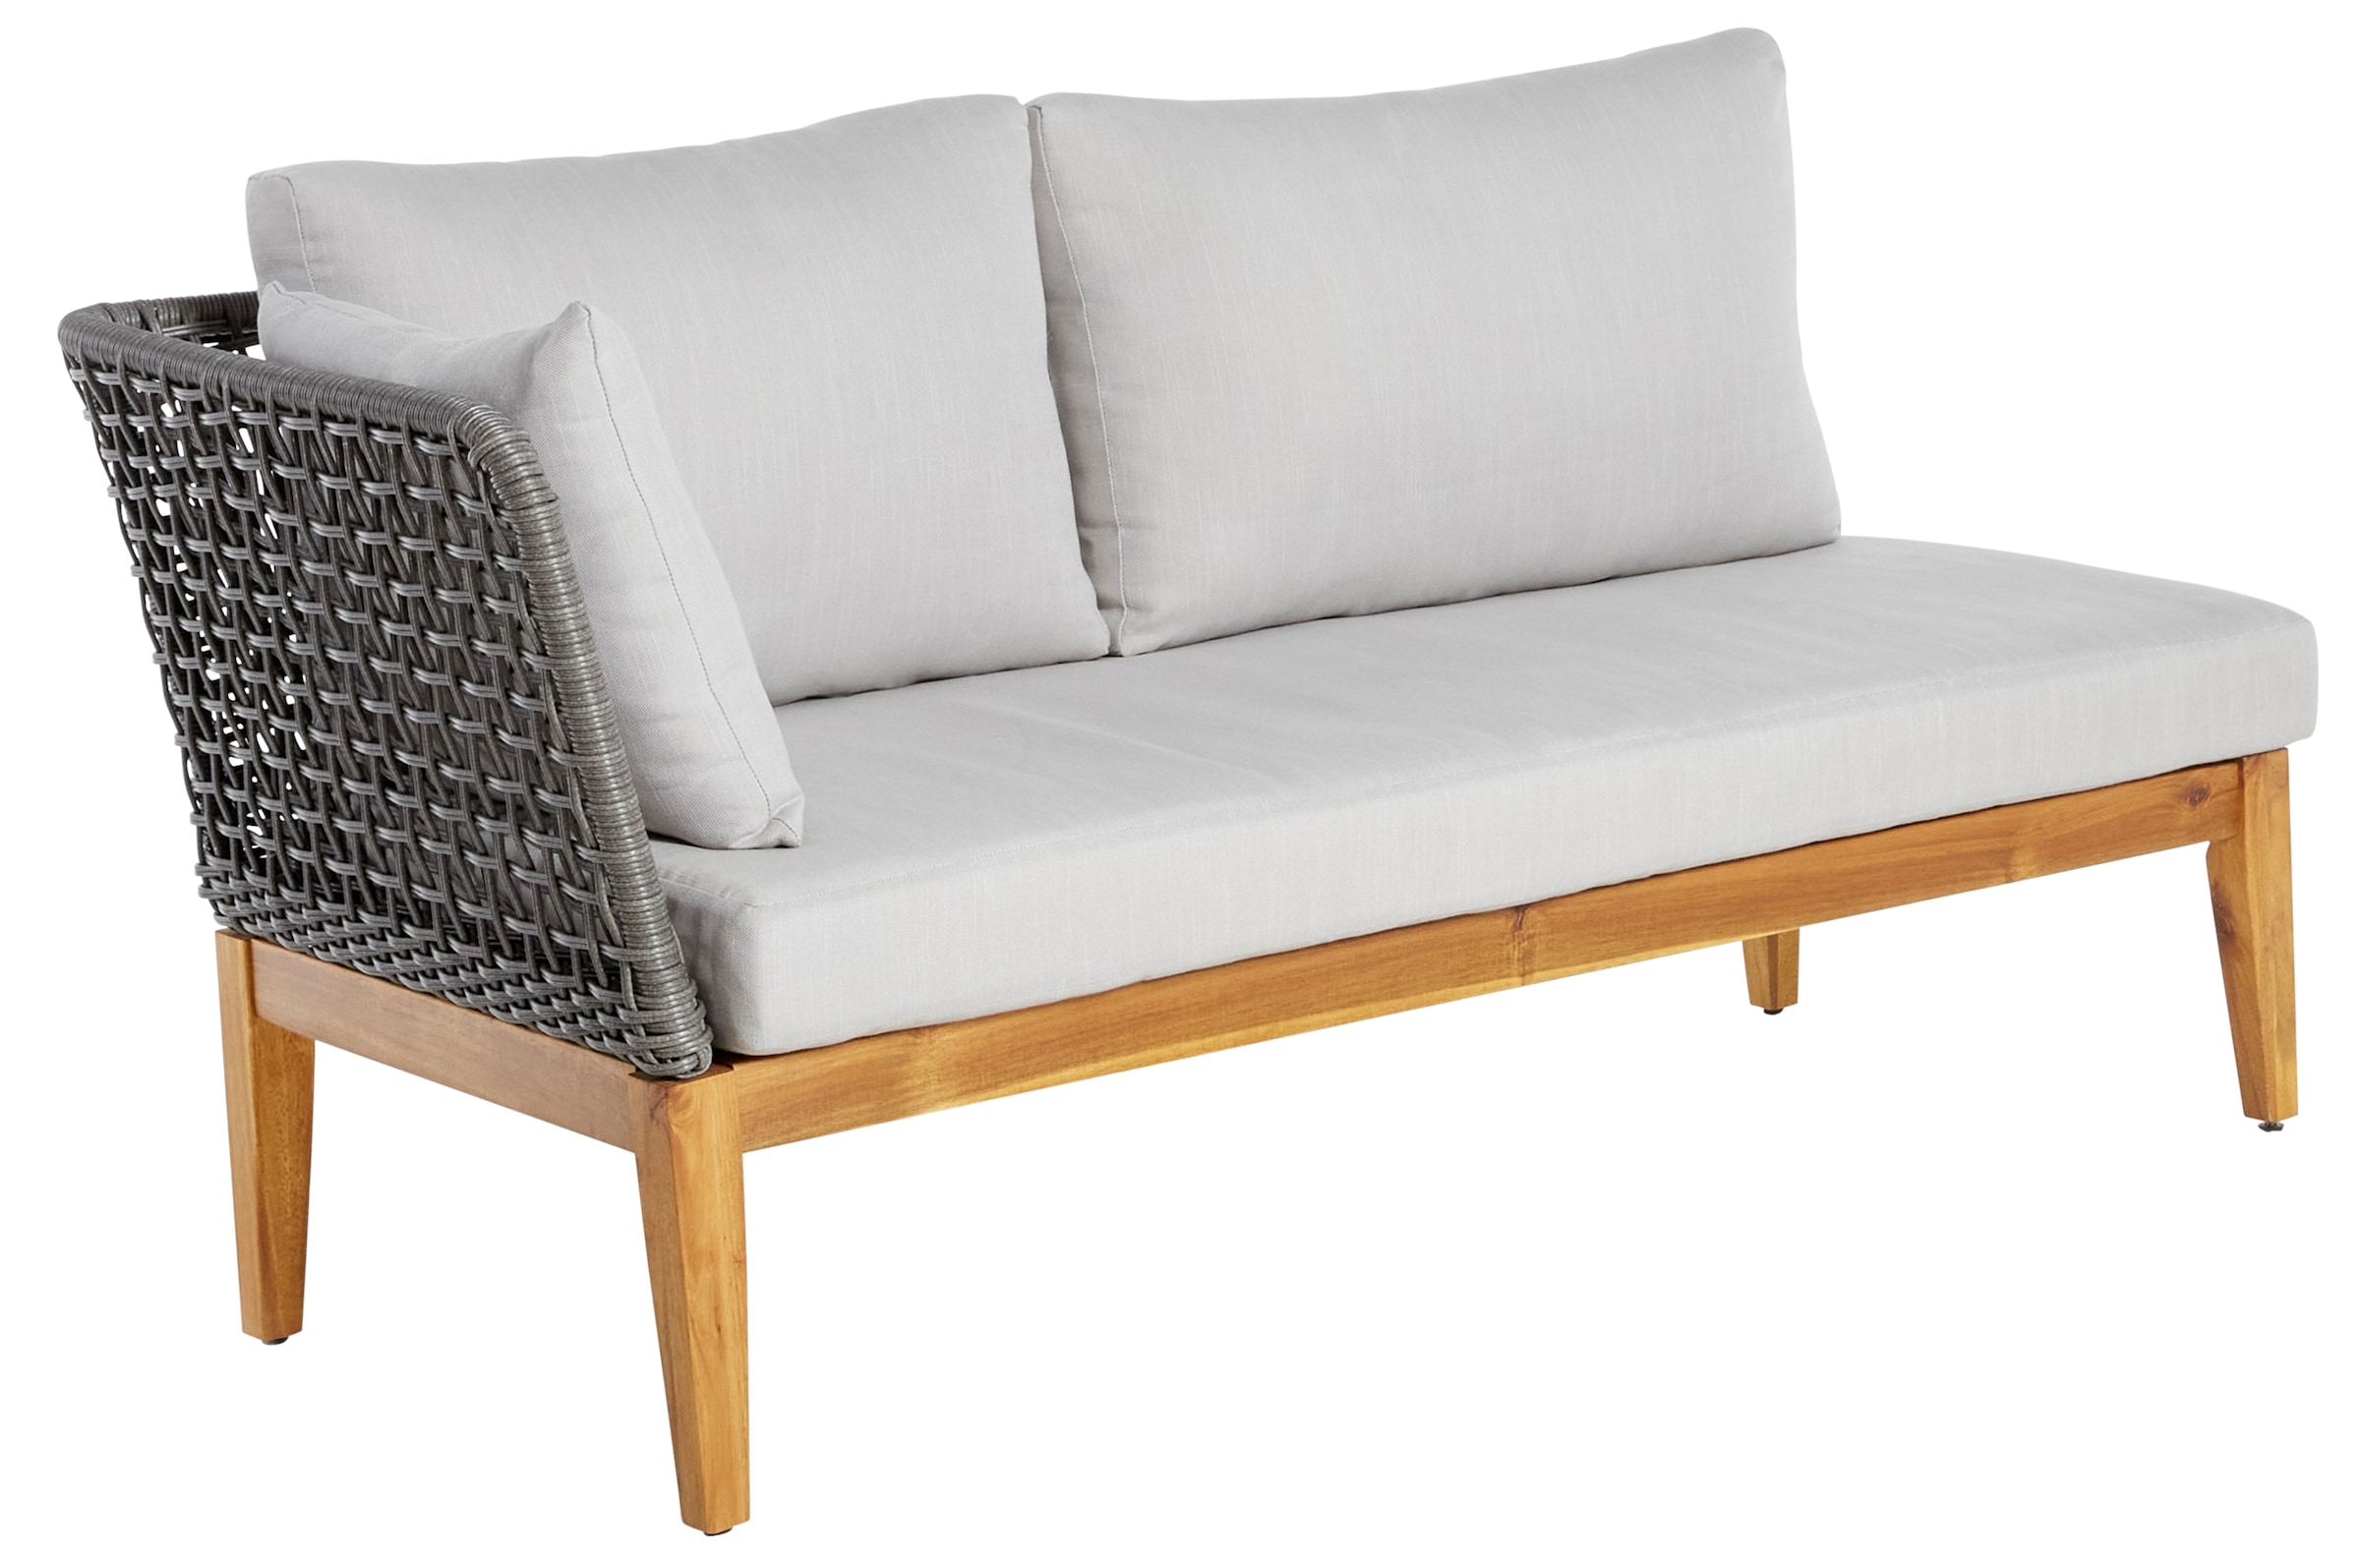 Timbers Gartenlounge-Set »Sunnyvale«, (Set, 3 tlg., 2x Sofa, 1x Tisch/Hocker 70x70x28 cm), inkl. Auflagen, Gestell aus hochwertigem Massivholz